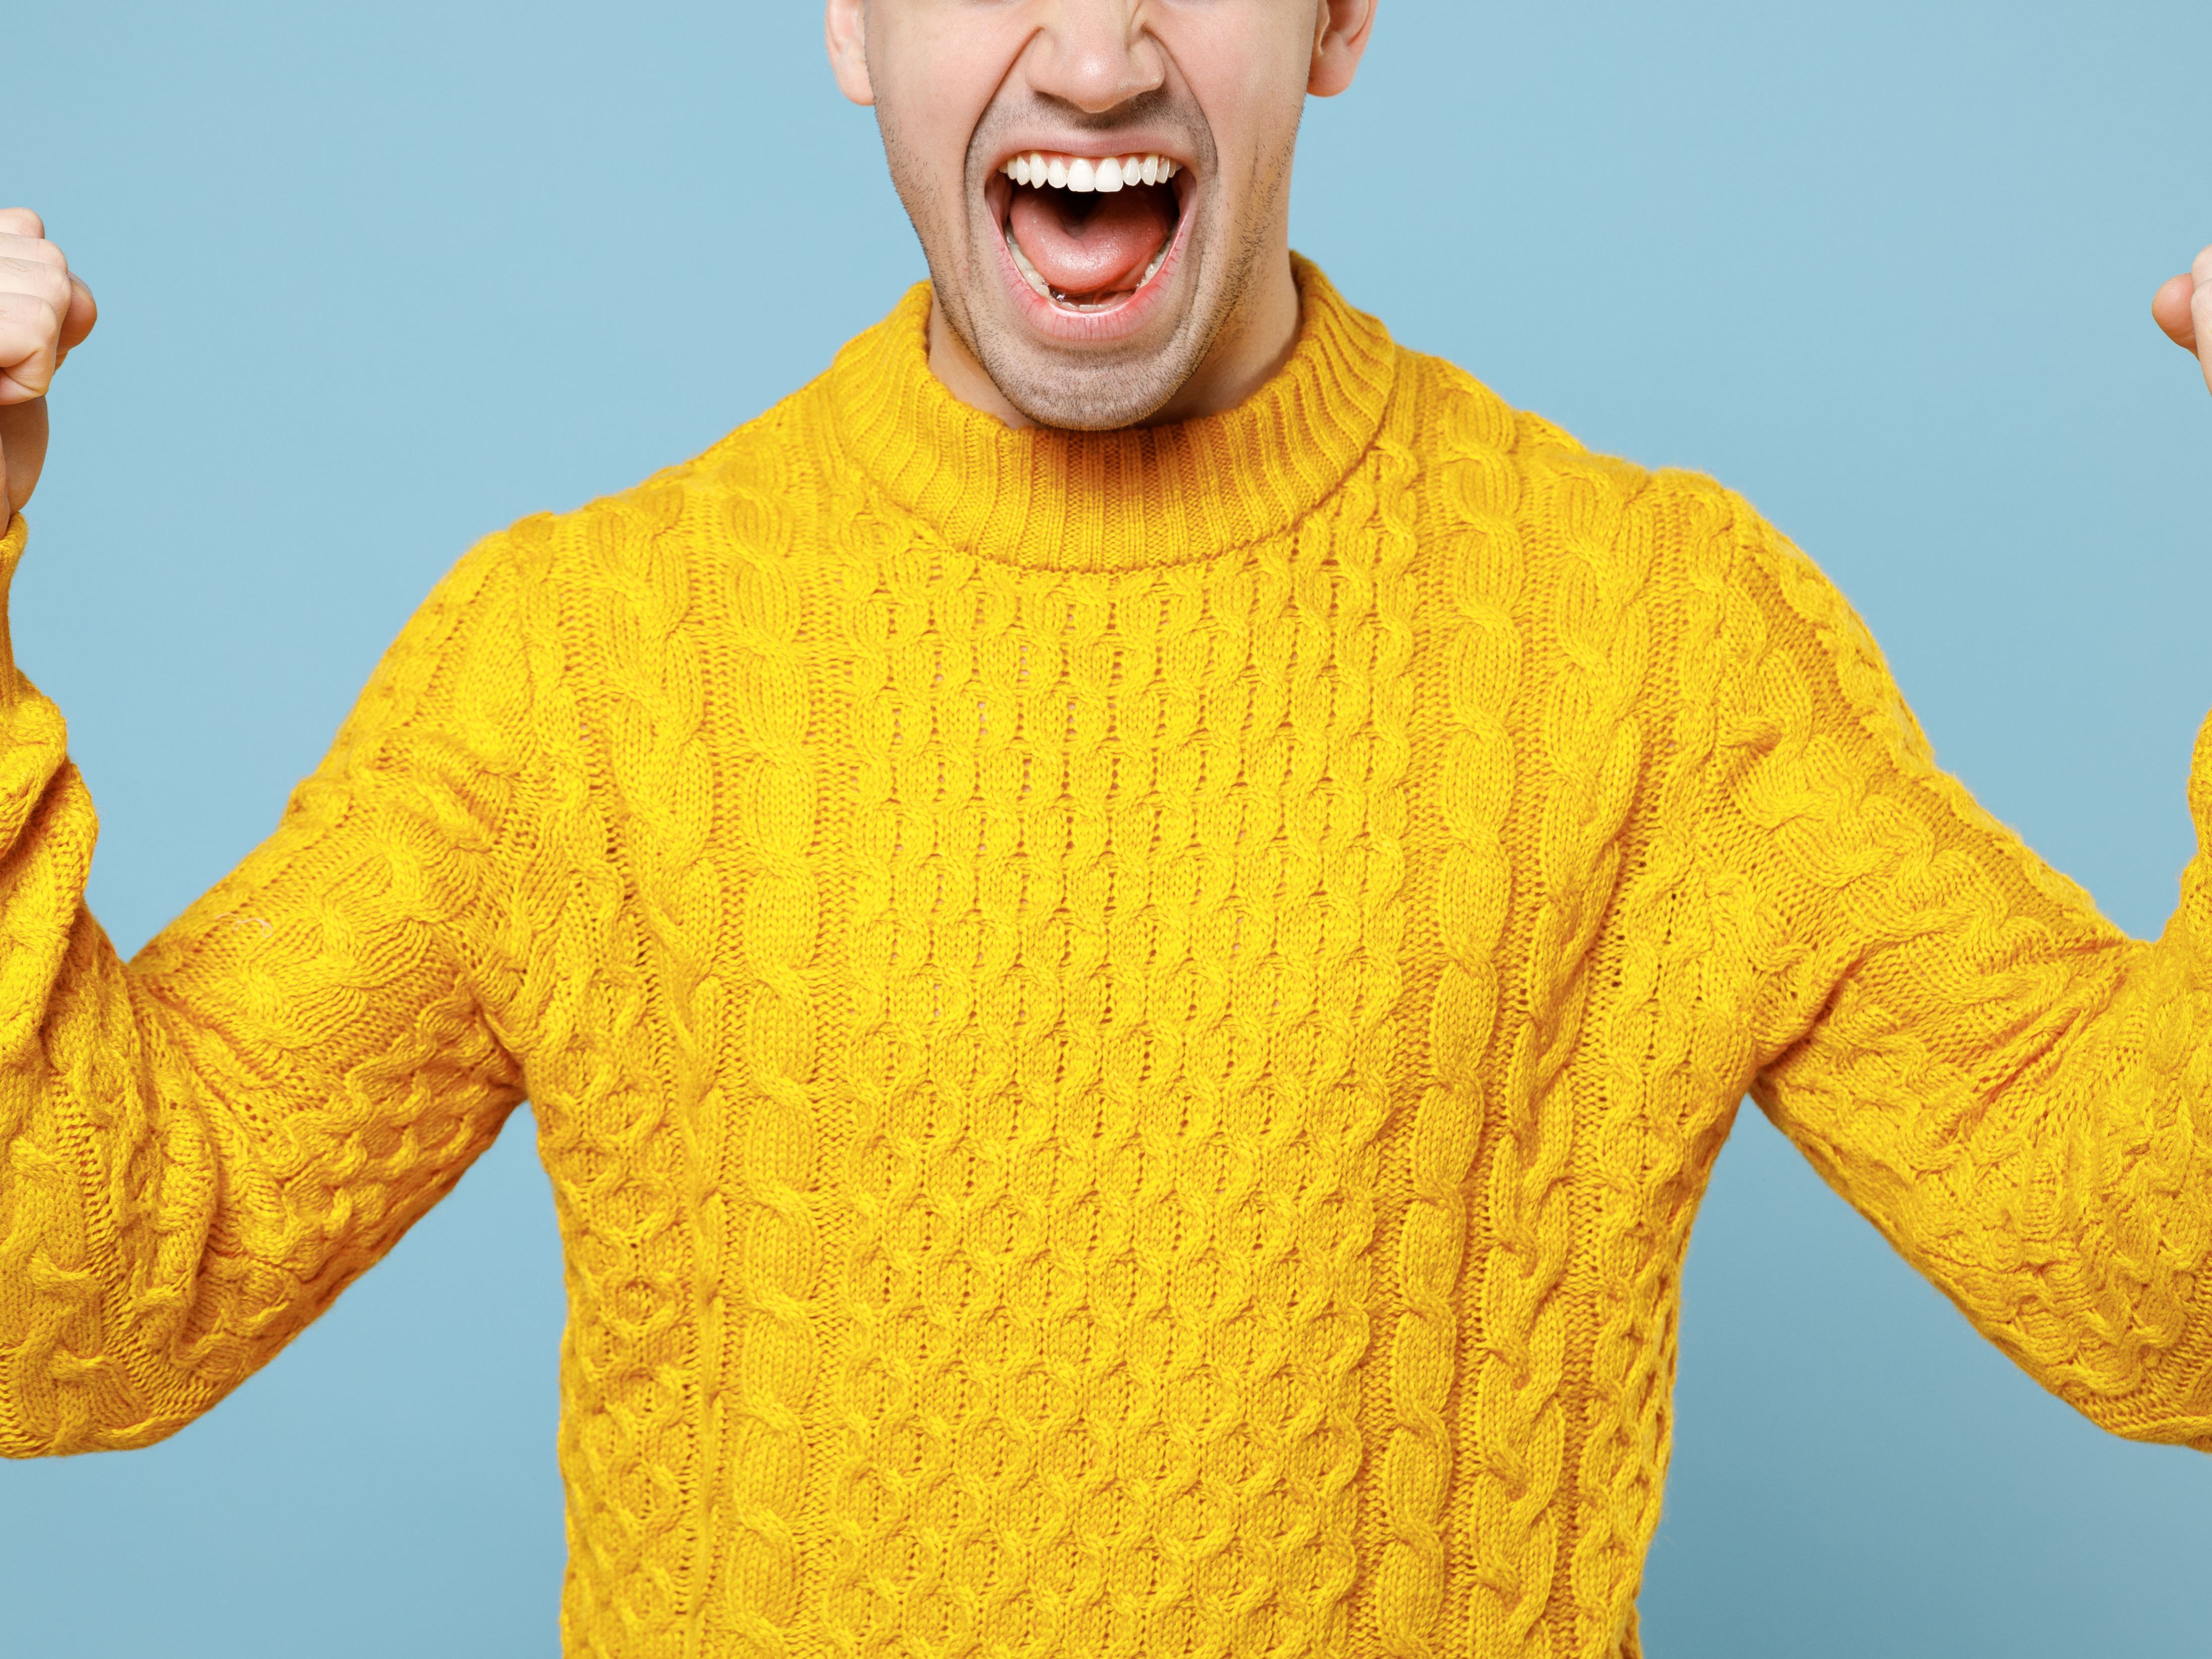 Utnsitt av overkropp og halve ansiktet til en mann som gaper jublende i gul strikkegenser og holder begge armene opp med hendene knyttet i seiersjubel, mot lyseblå bakgrunn.